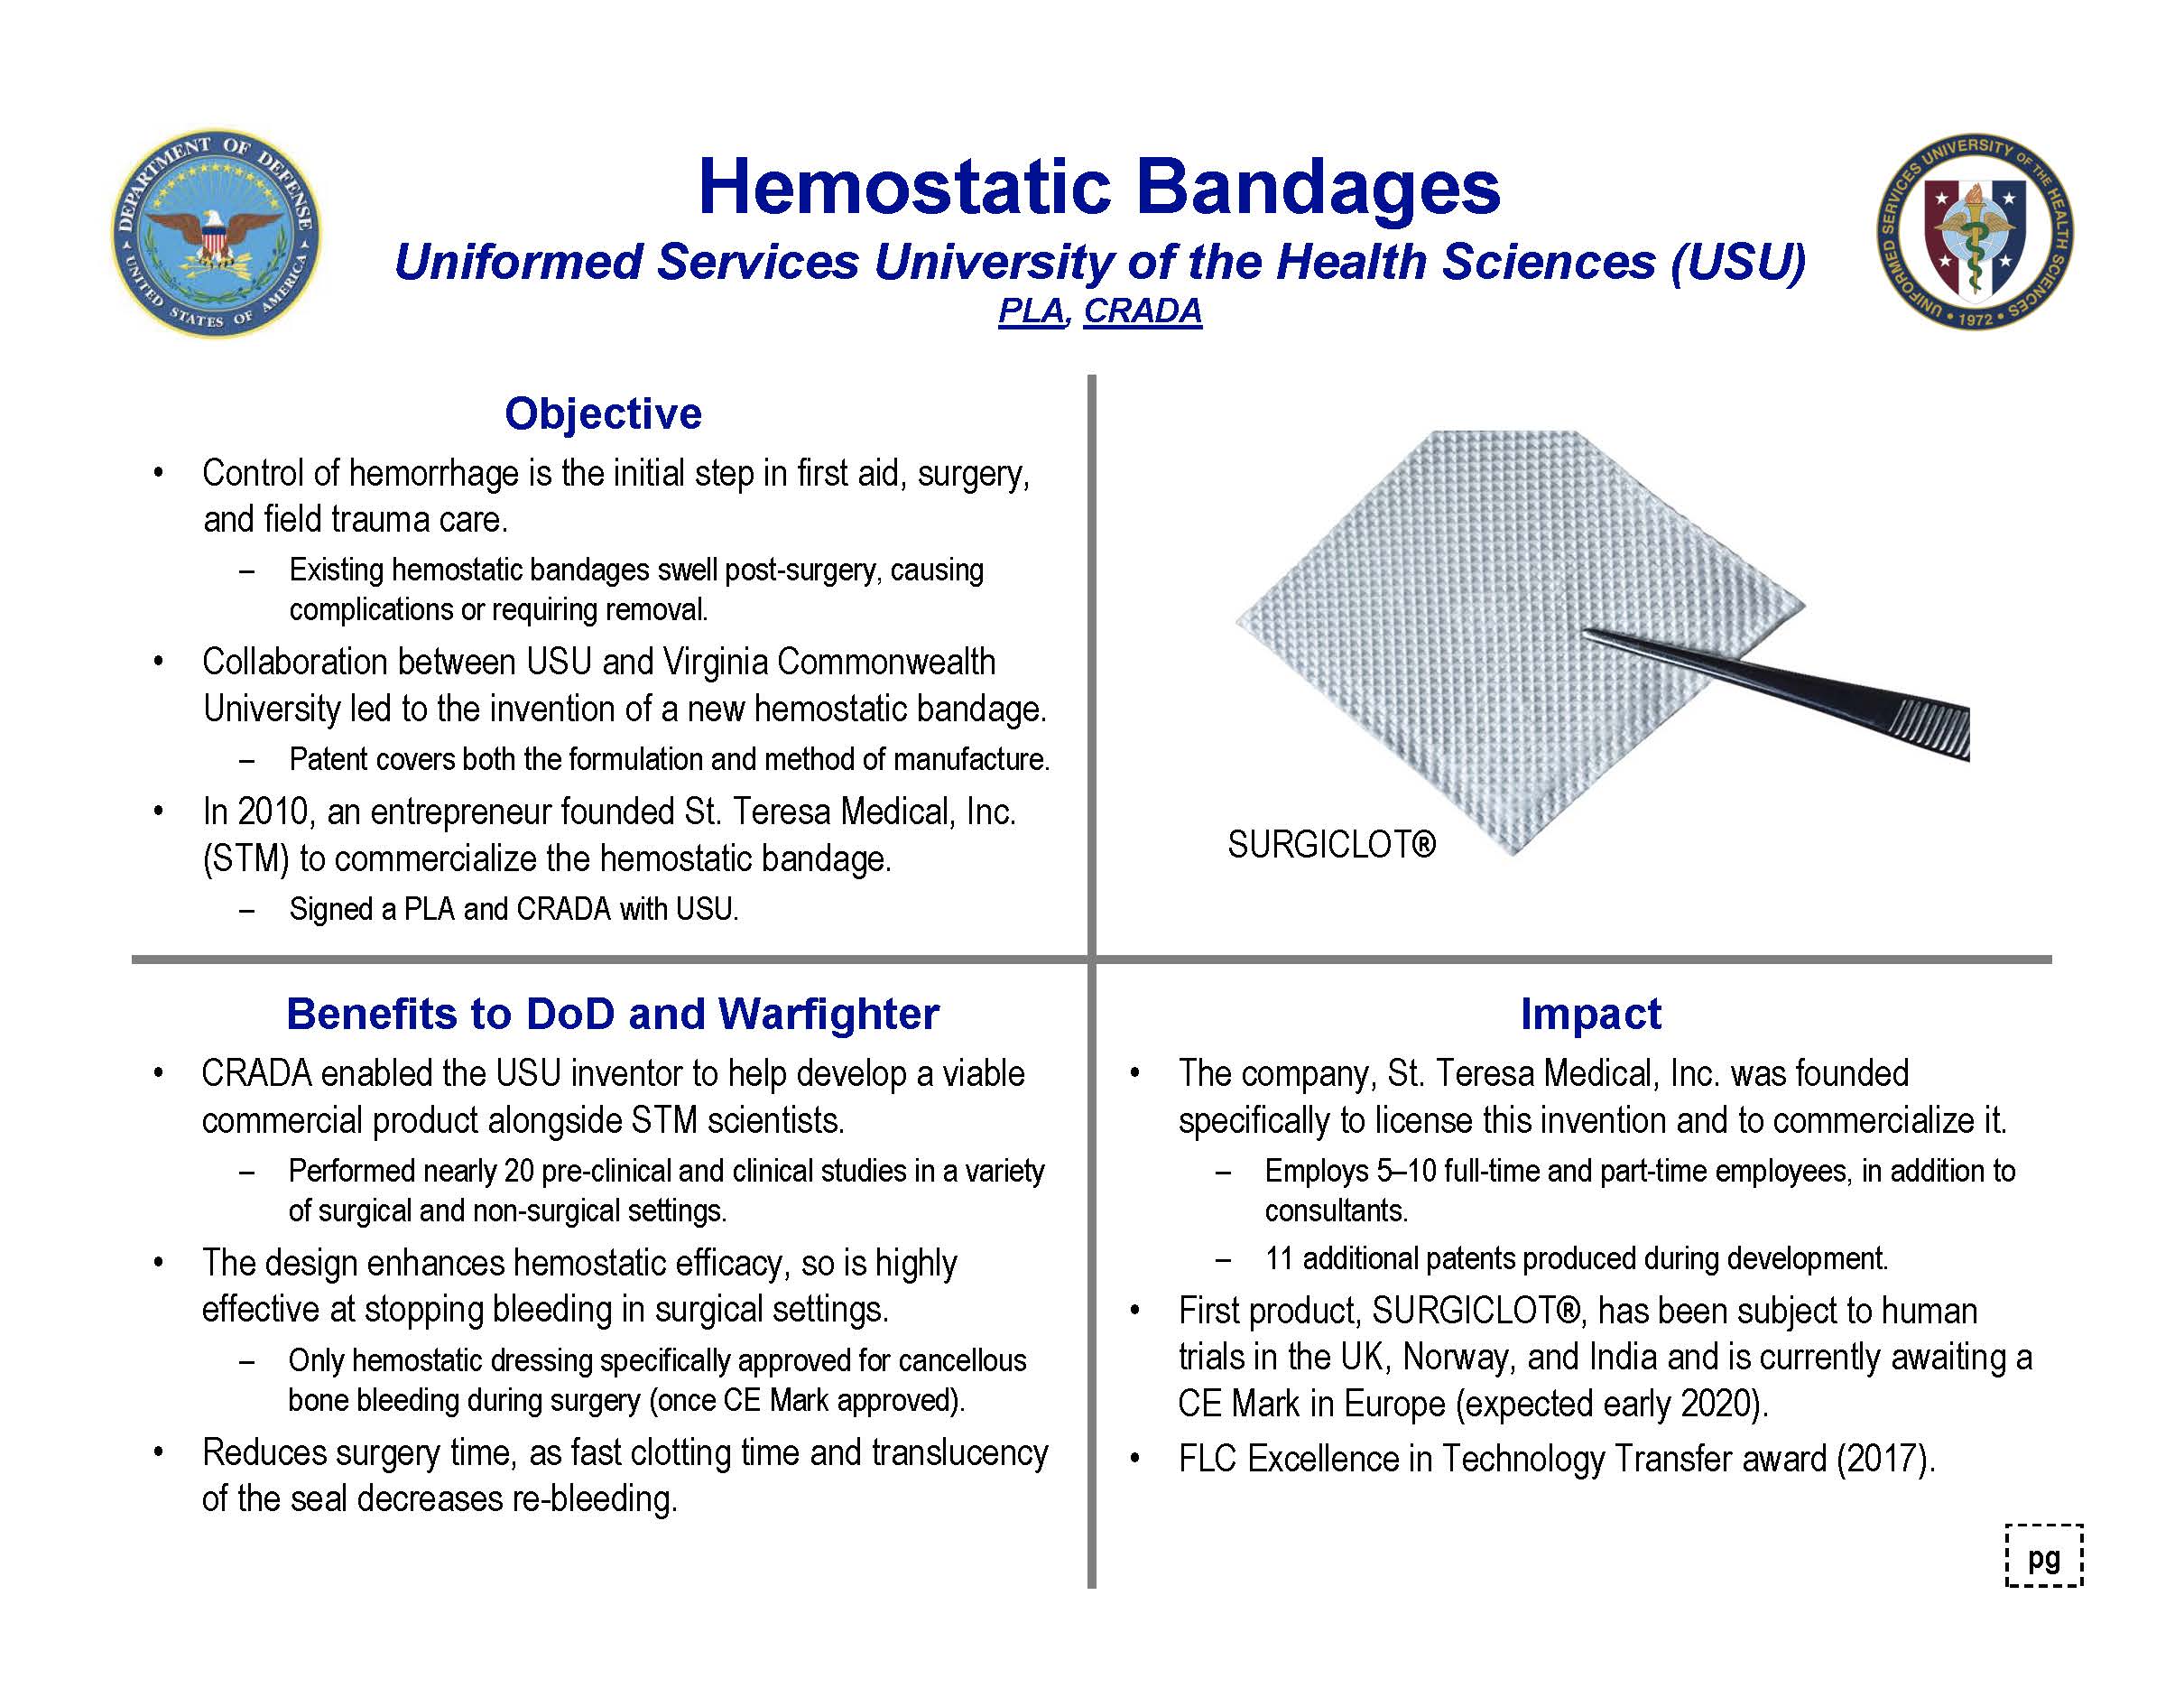 Four quadrant explanation of hemostatic bandages